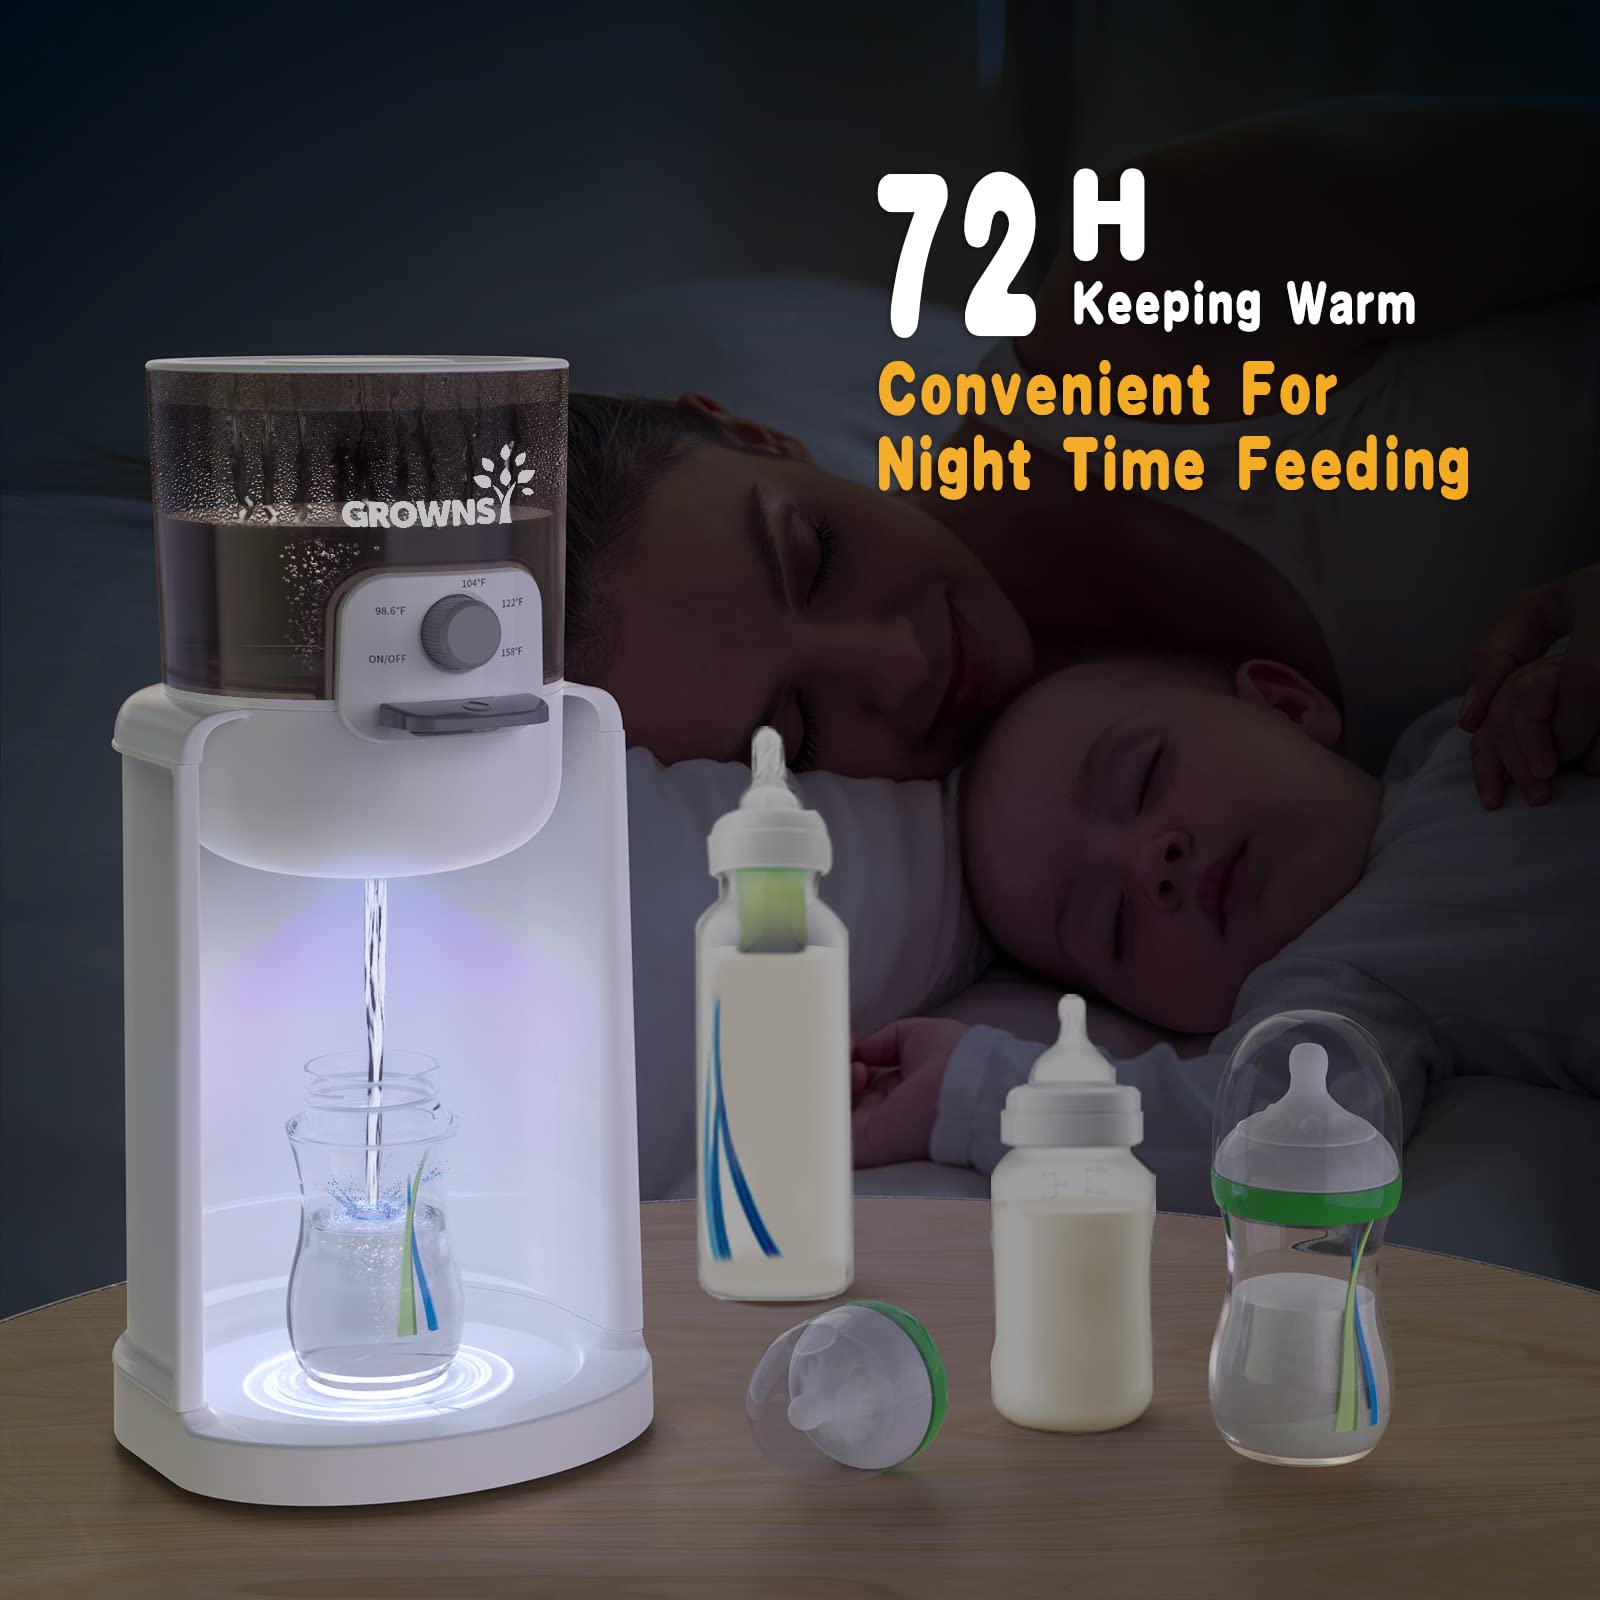 GROWNSY Water Warmer & Baby Bottle Warmer